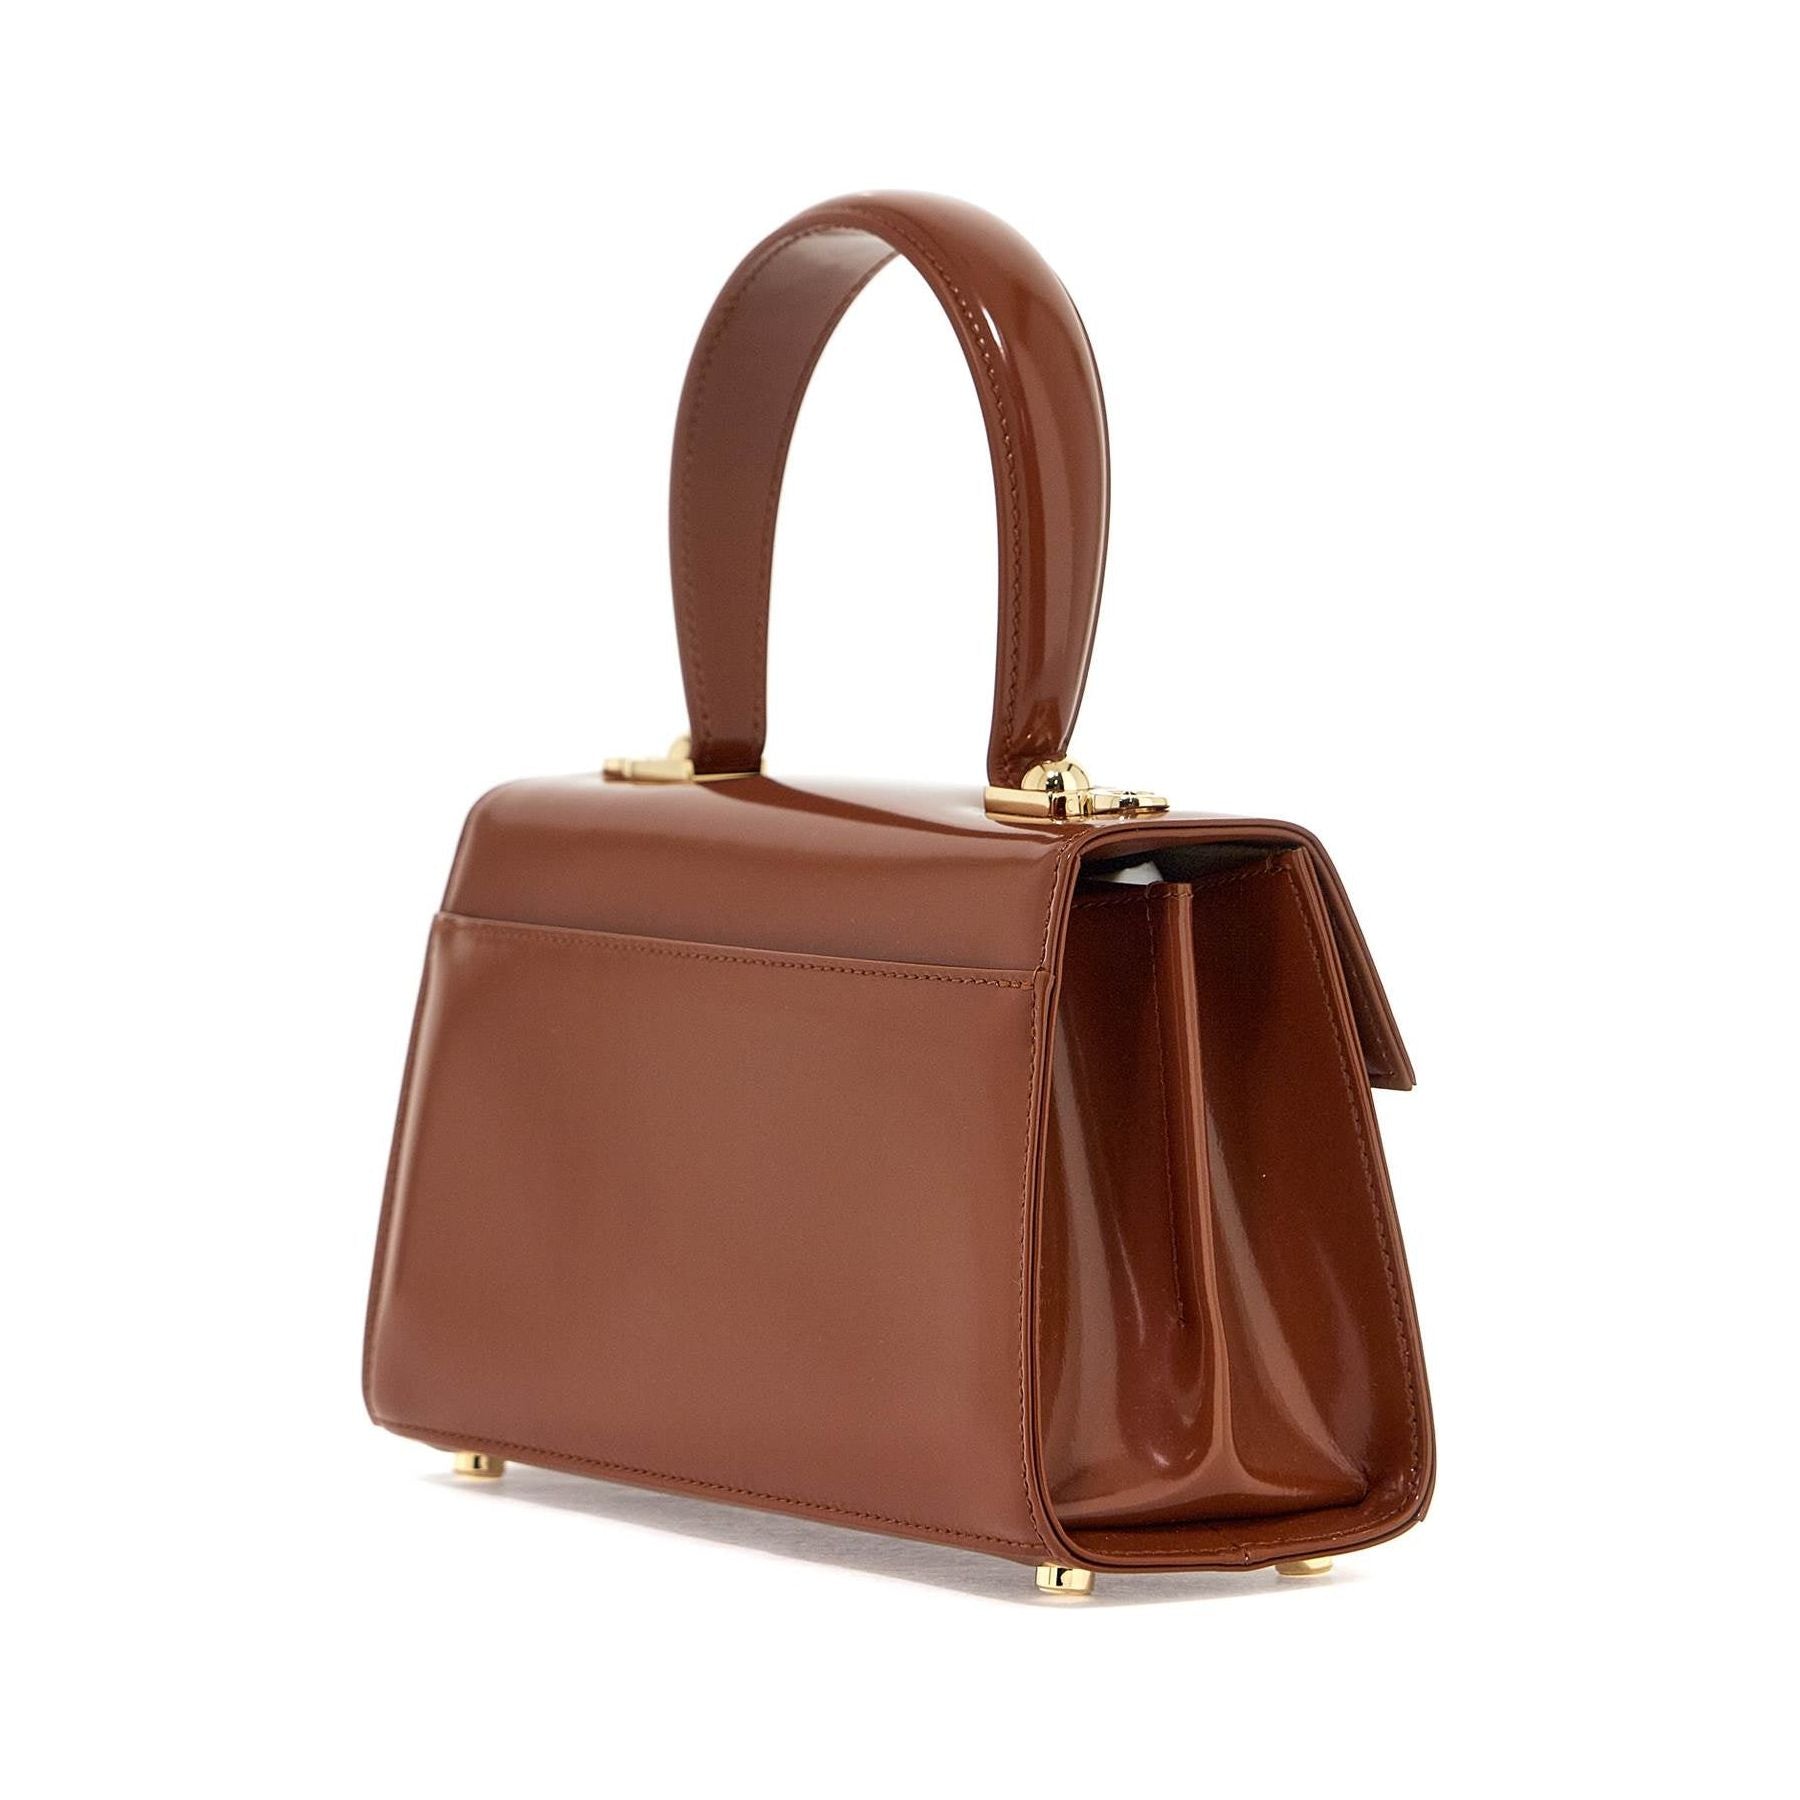 Iconic Top Handle Handbag